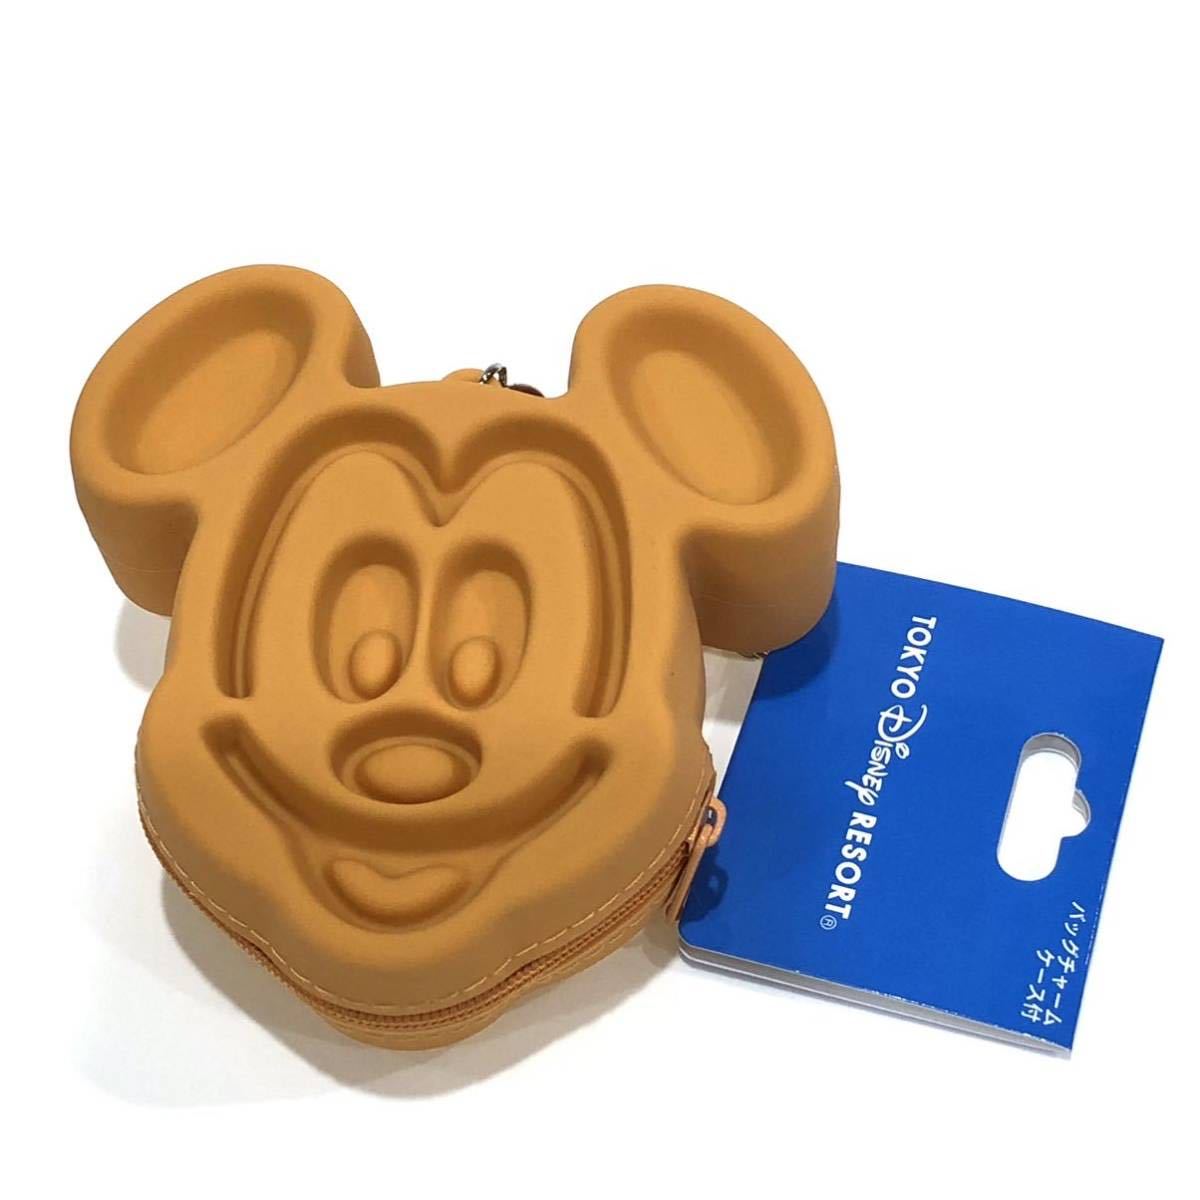 園内限定品 Disney ディズニー 東京ディズニーランド ミッキーワッフル バッグチャーム コインケース パークフードデザイン ディズニー 売買されたオークション情報 Yahooの商品情報をアーカイブ公開 オークファン Aucfan Com